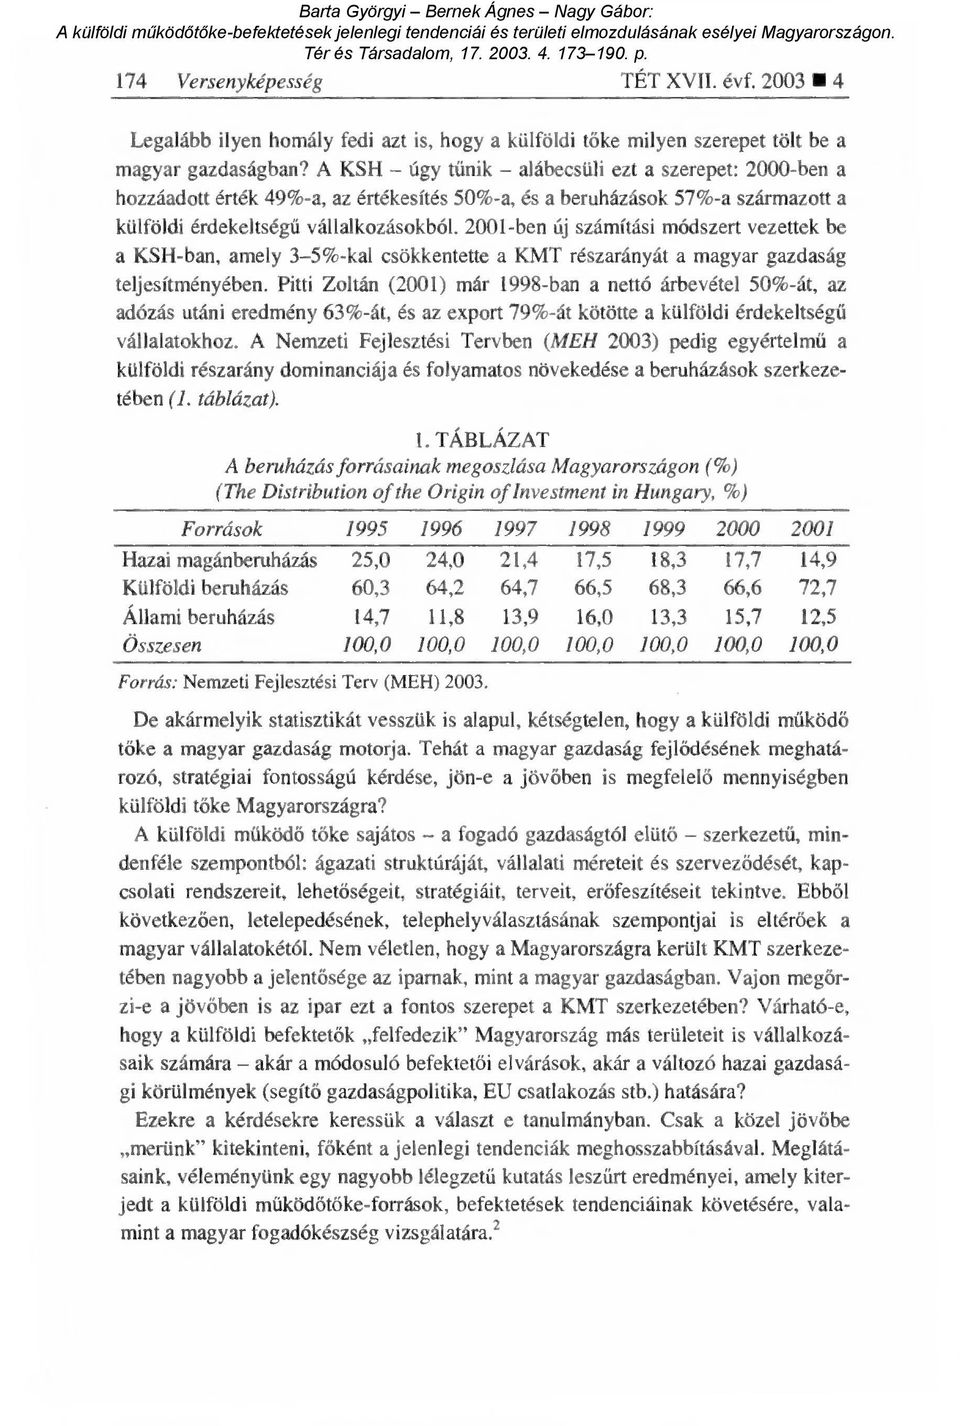 2001-ben új számítási módszert vezettek be a KSH-ban, amely 3-5%-kal csökkentette a KMT részarányát a magyar gazdaság teljesítményében.